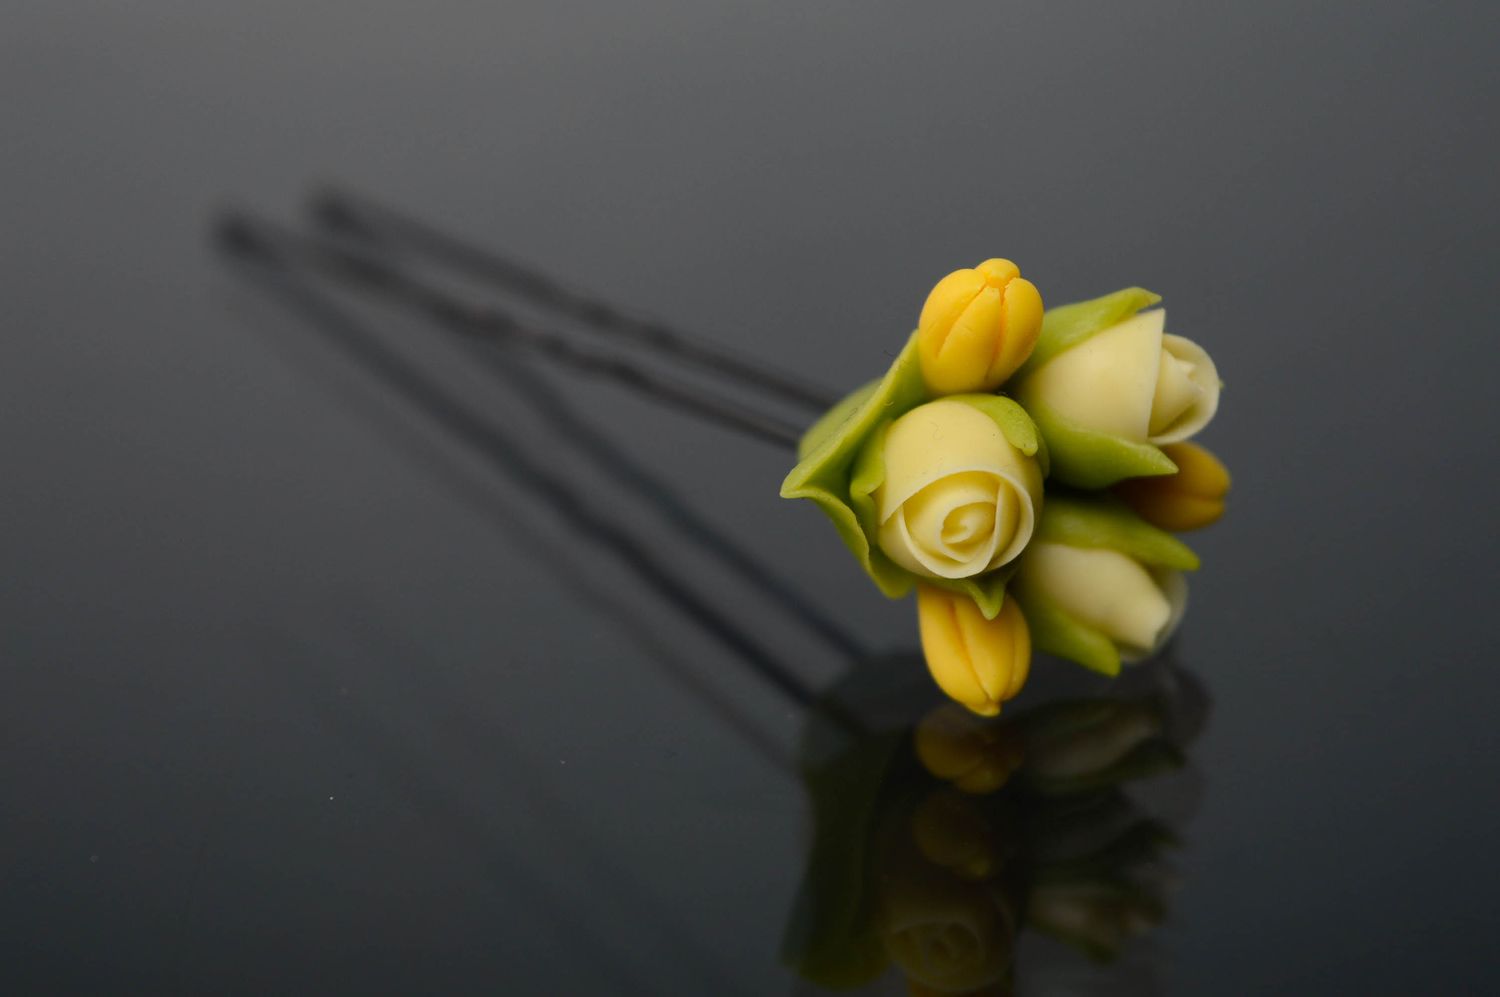 Épingle à cheveux en porcelaine froide Roses jaunes photo 1